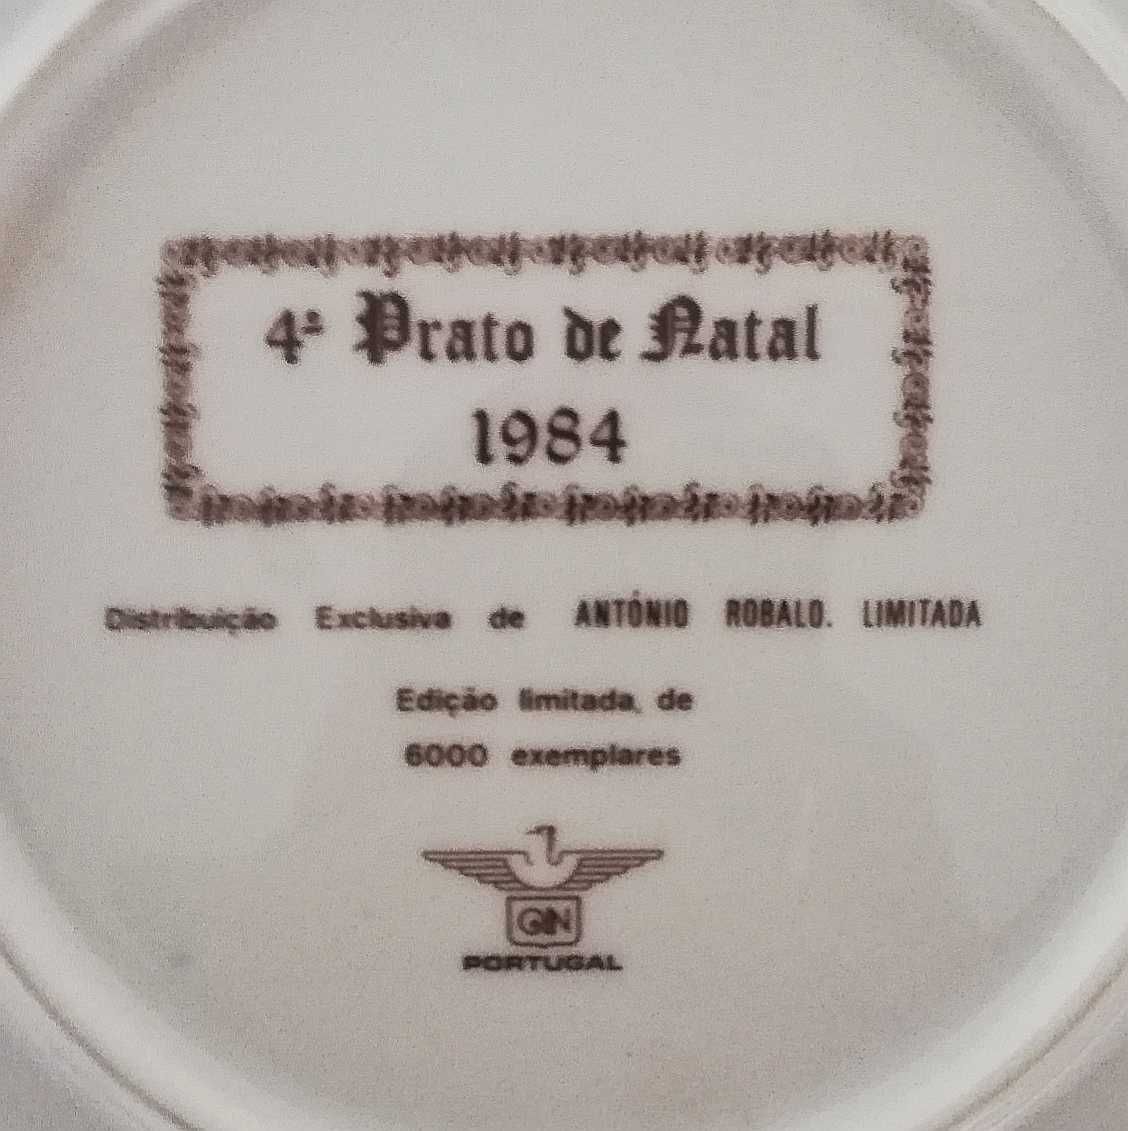 Prato de Natal 1984, QN Porcelanas